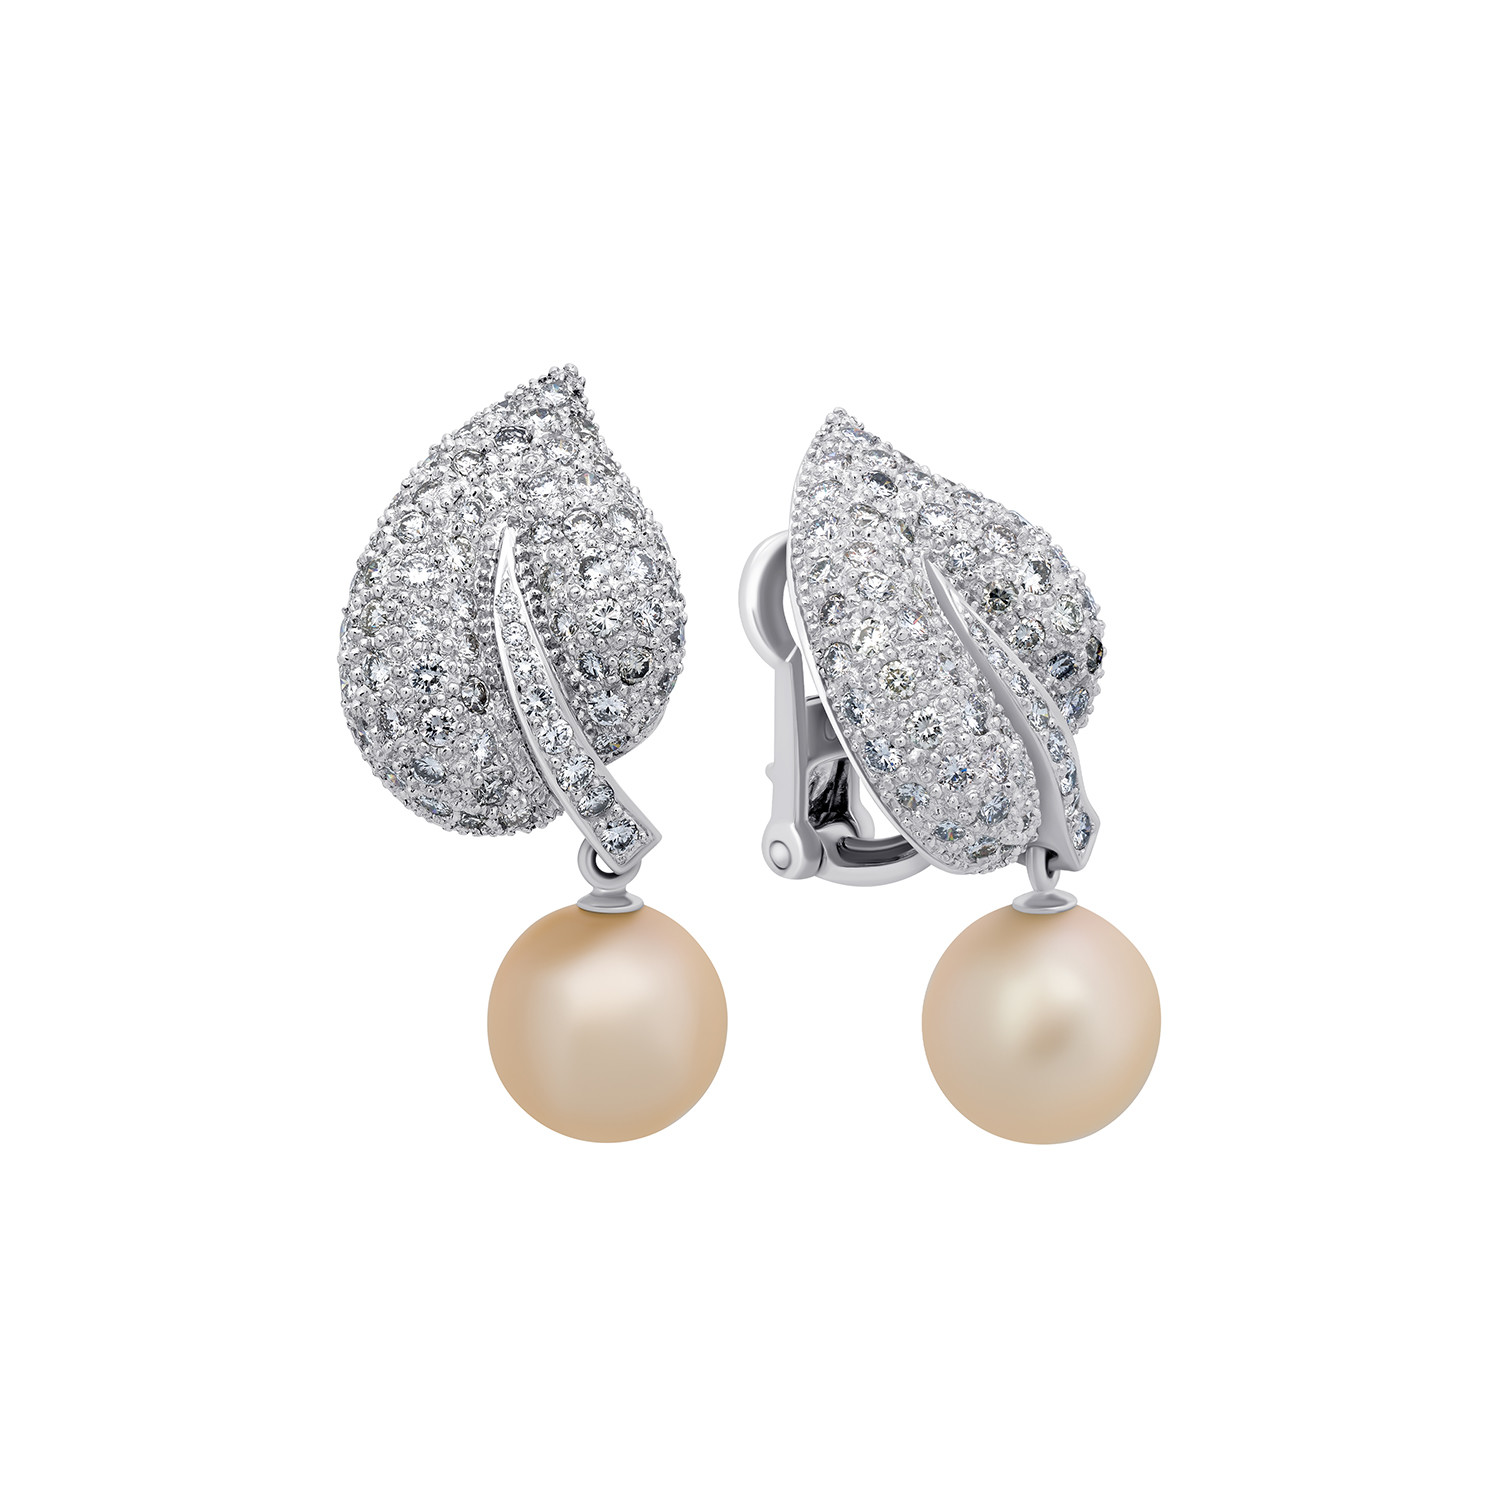 Assael 18k White Gold Diamond + Freshwater Pearl Earrings I - Signed ...